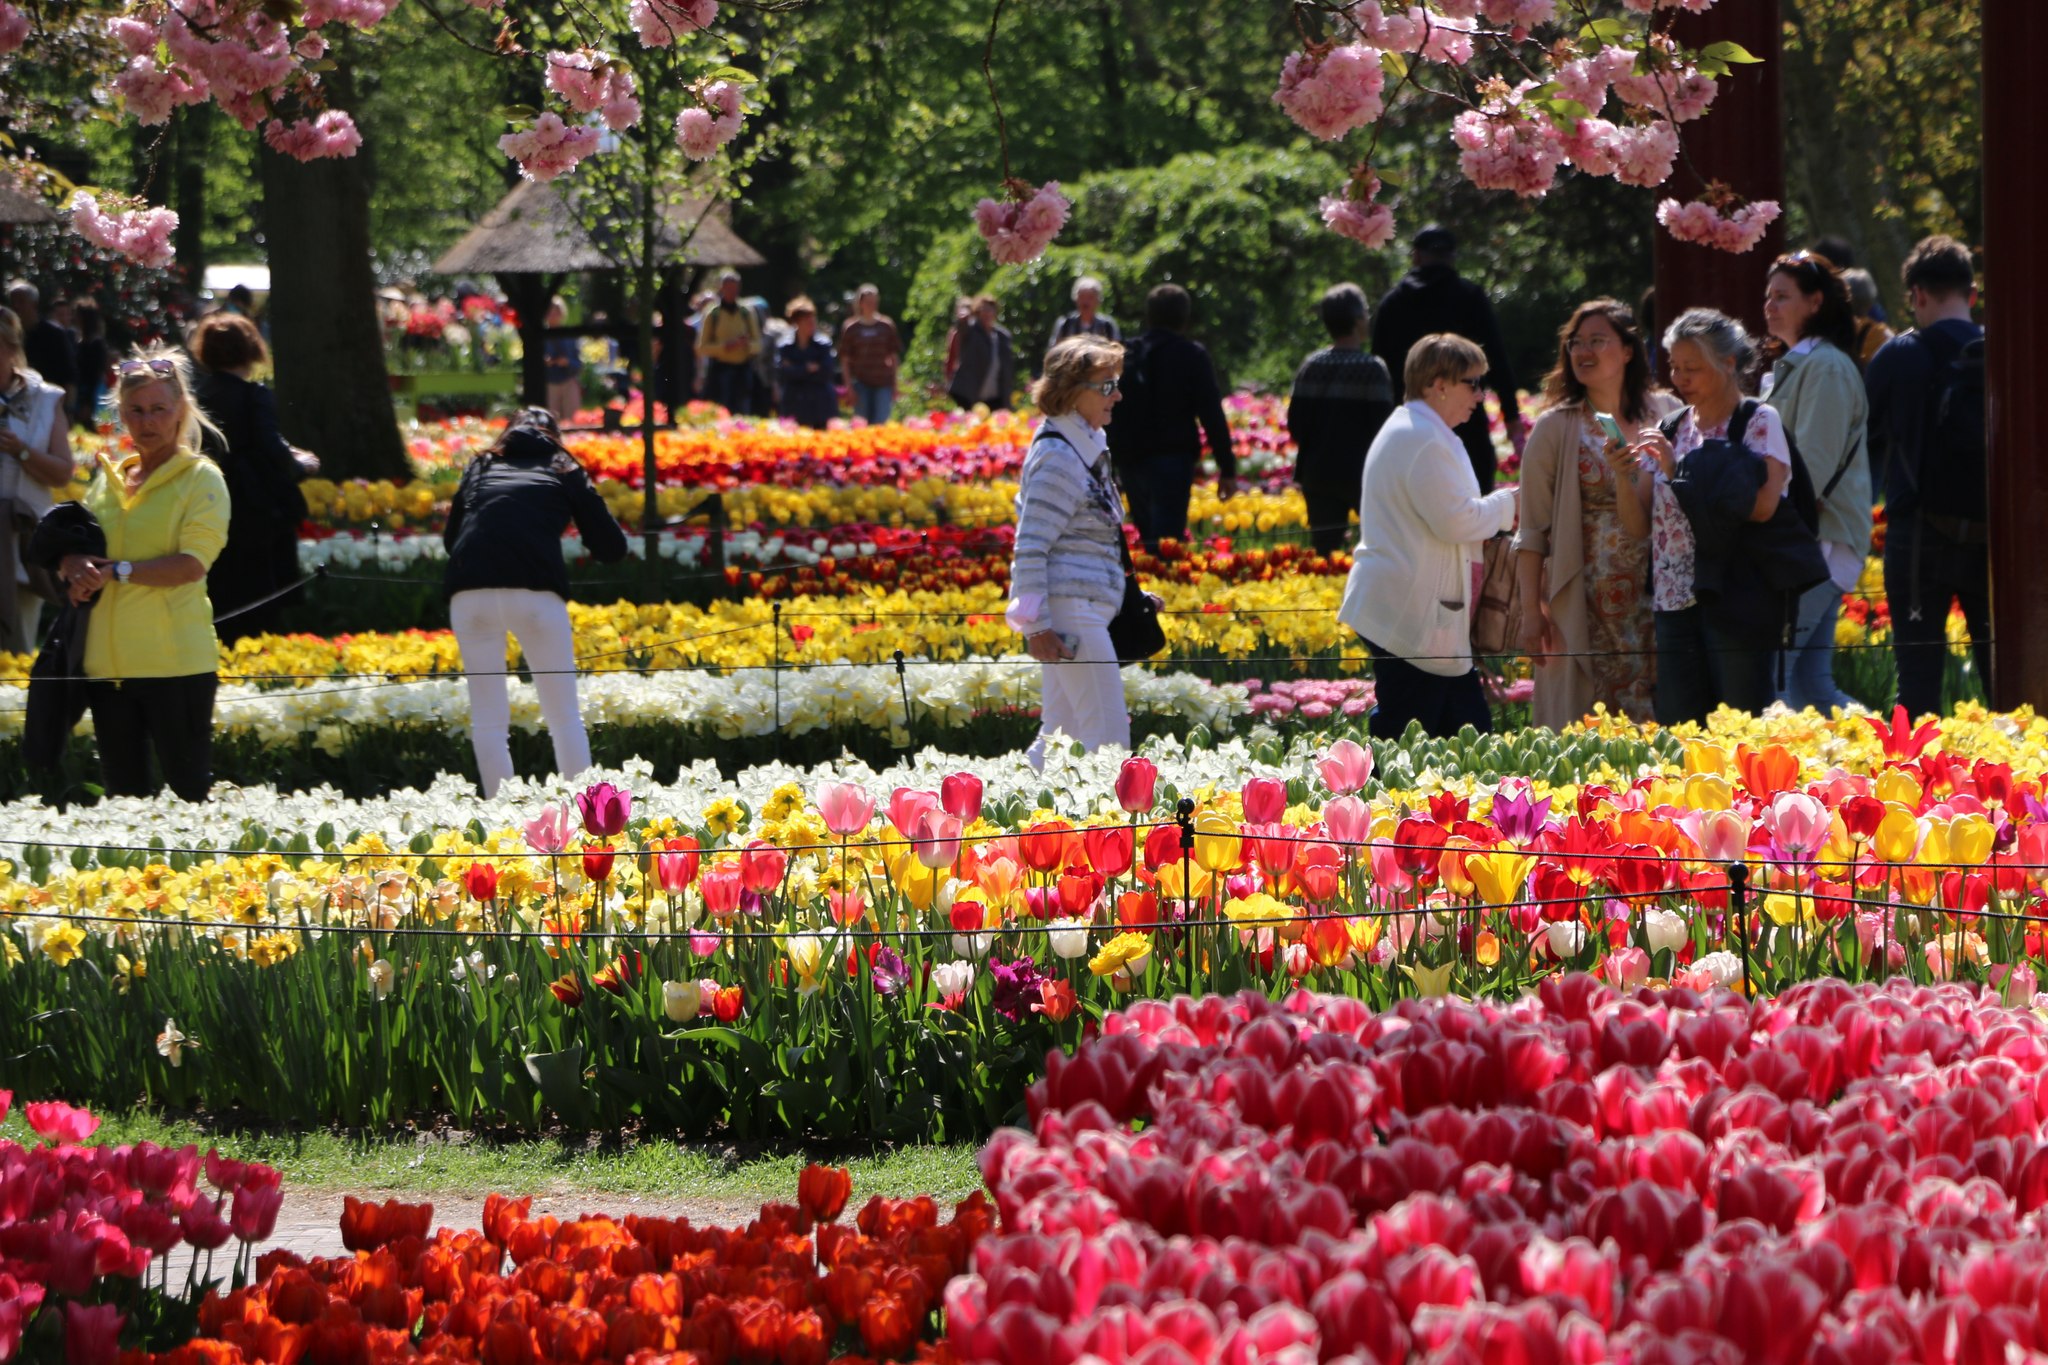 Esto se aplica tanto a los tulipanes de los campos de bulbos como a los jardines de Keukenhof. Ven a disfrutar de los tulipanes hasta el 15 de mayo. Visite los #tulipanes en #Amsterdam del 24 de marzo al 15 de mayo de 2022. www.tulipfestivalamsterdam.com